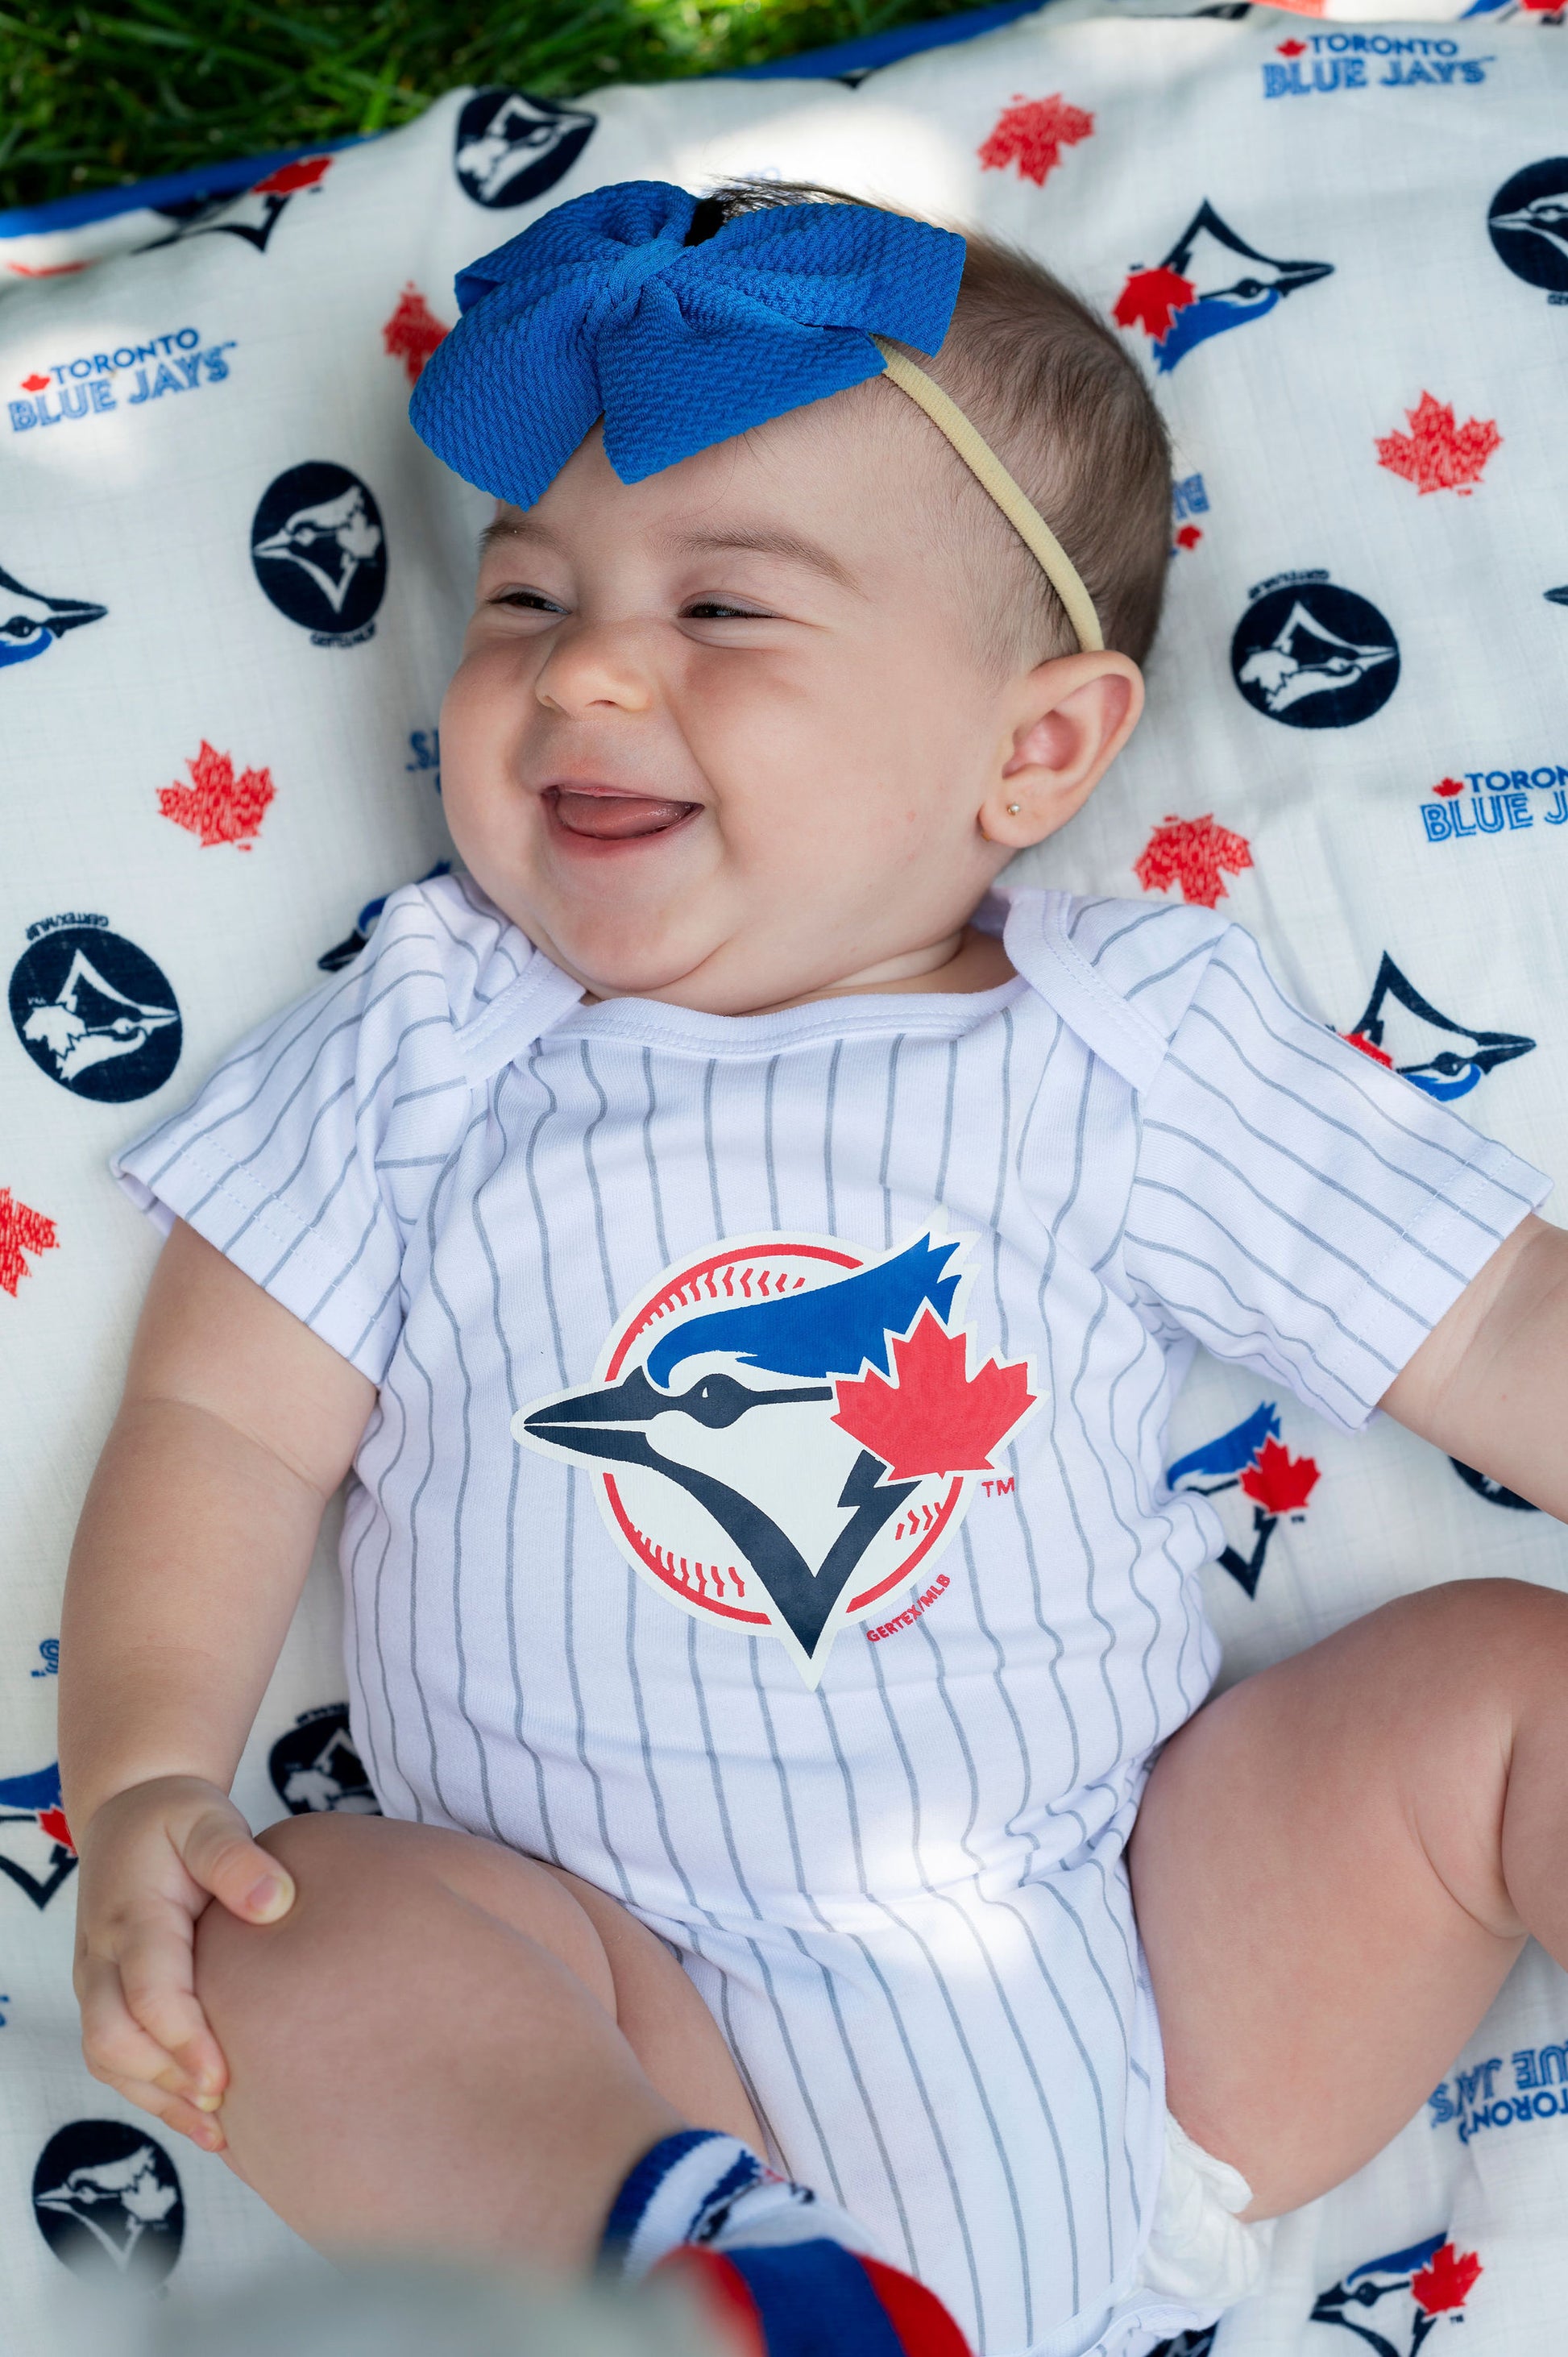 Gertex MLB Toronto Blue Jays 3-Pack Baby Bodysuits